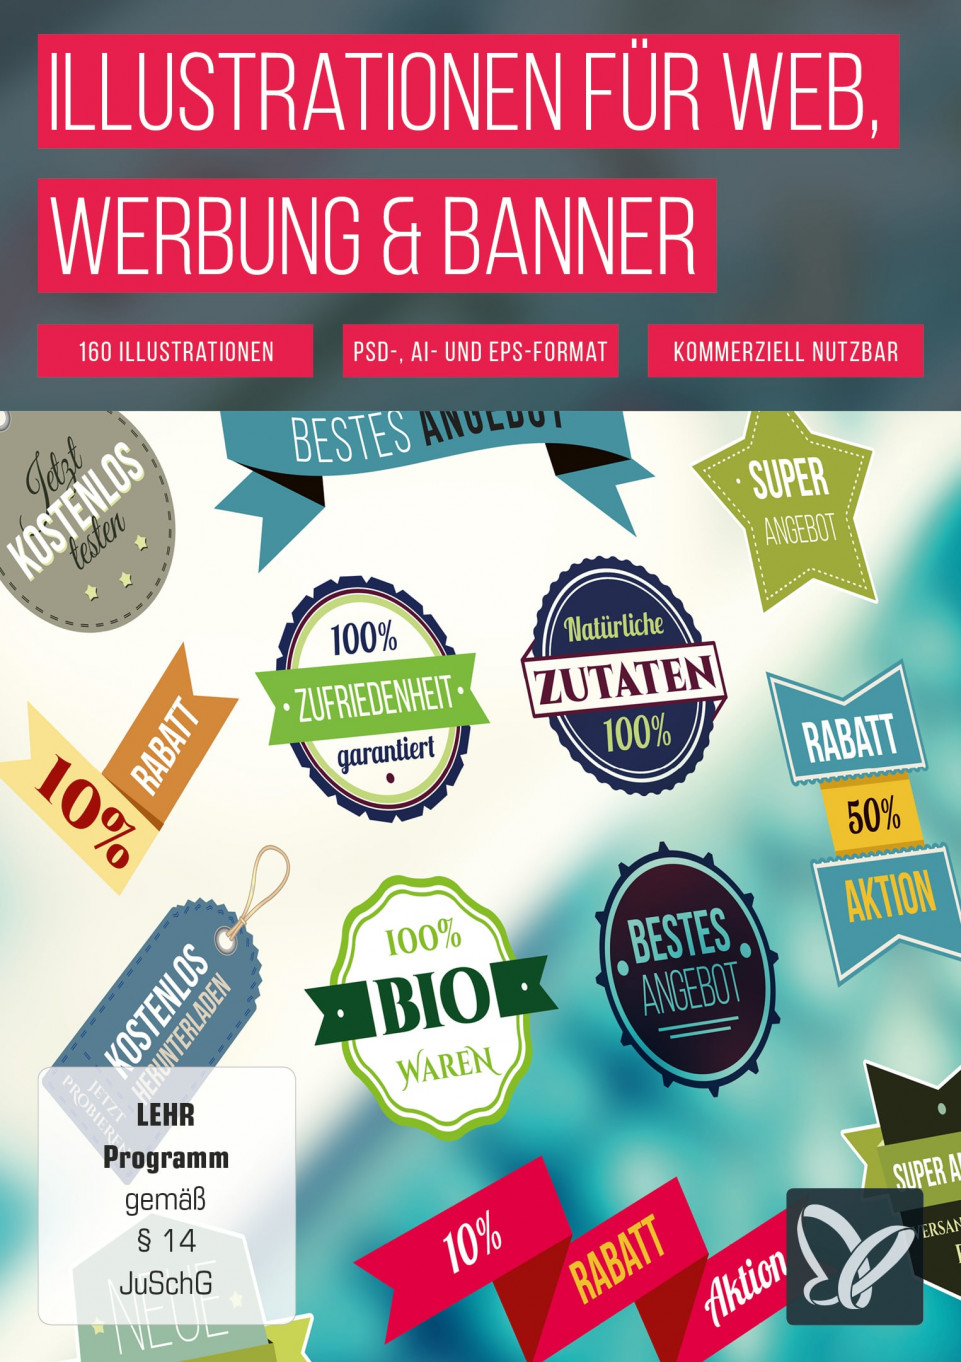 illustrationen-fuer-werbung-banner-und-websites--onix